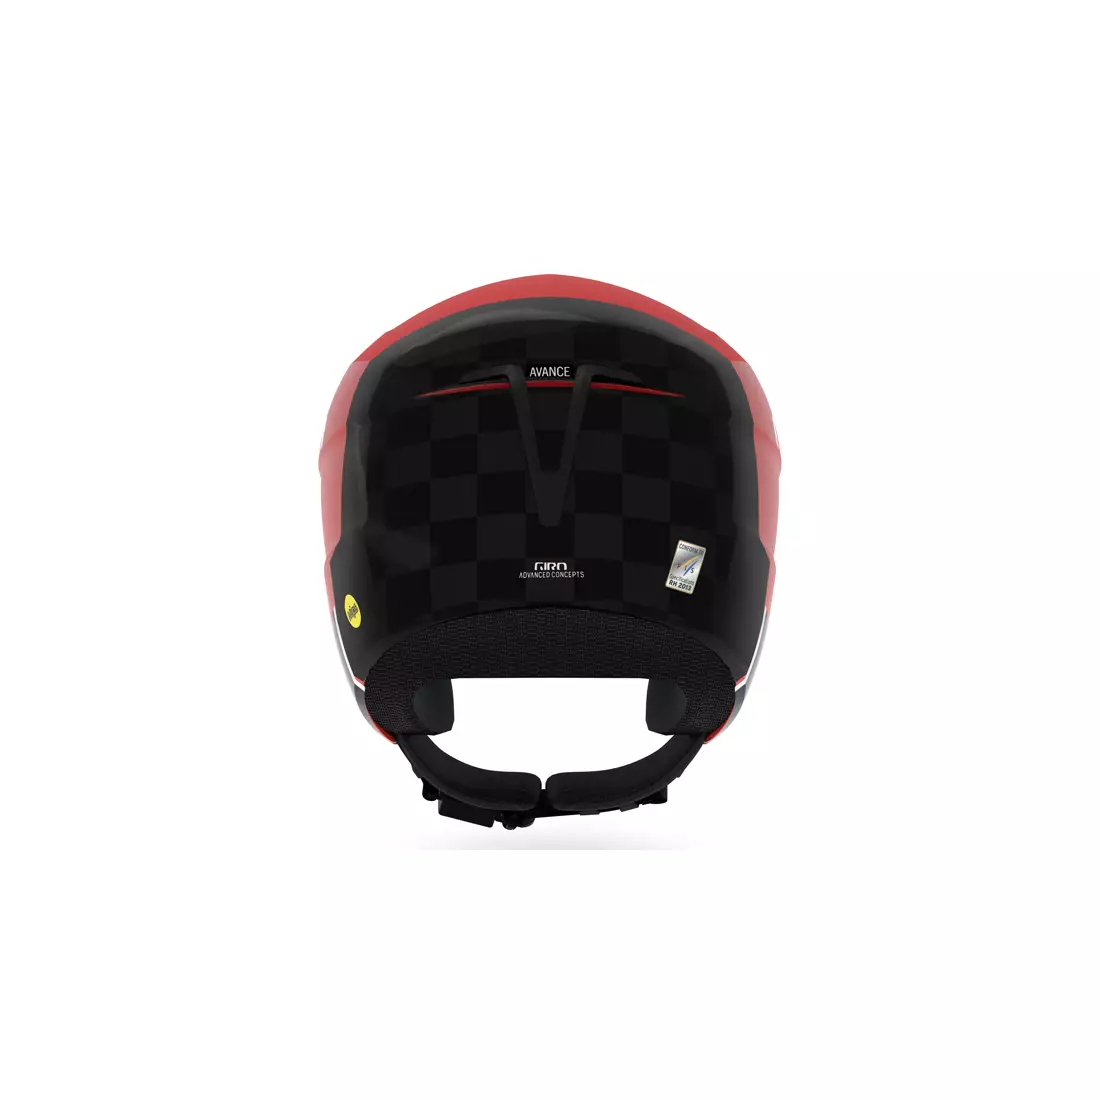 Ski helmet GIRO AVANCE SPHERICAL MIPS matte red carbon